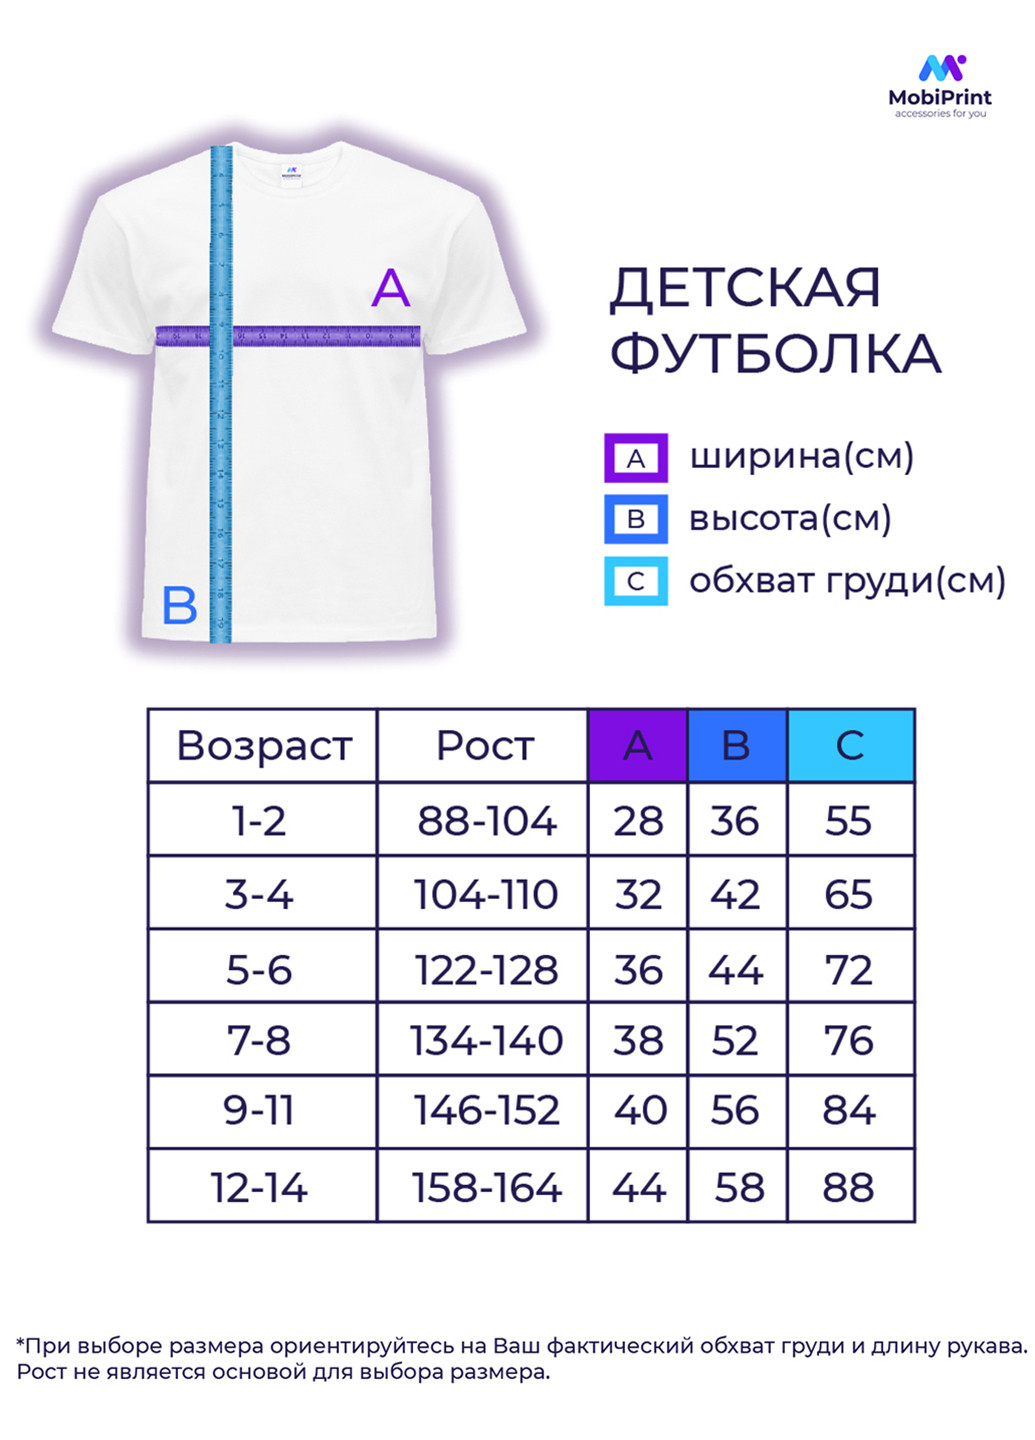 Фіолетова демісезонна футболка дитяча фортнайт (fortnite) (9224-1189) MobiPrint